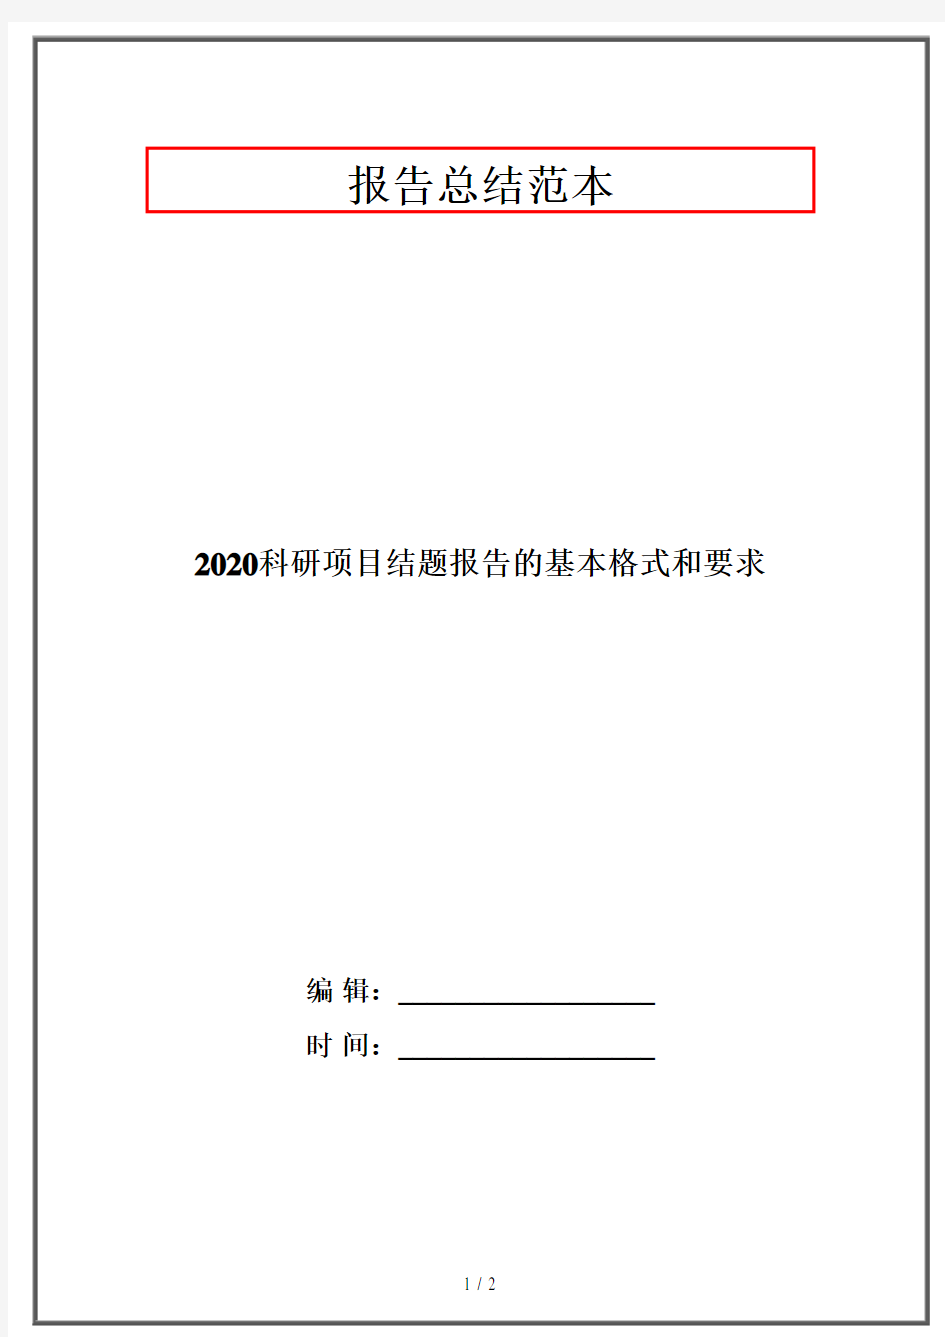 2020科研项目结题报告的基本格式和要求